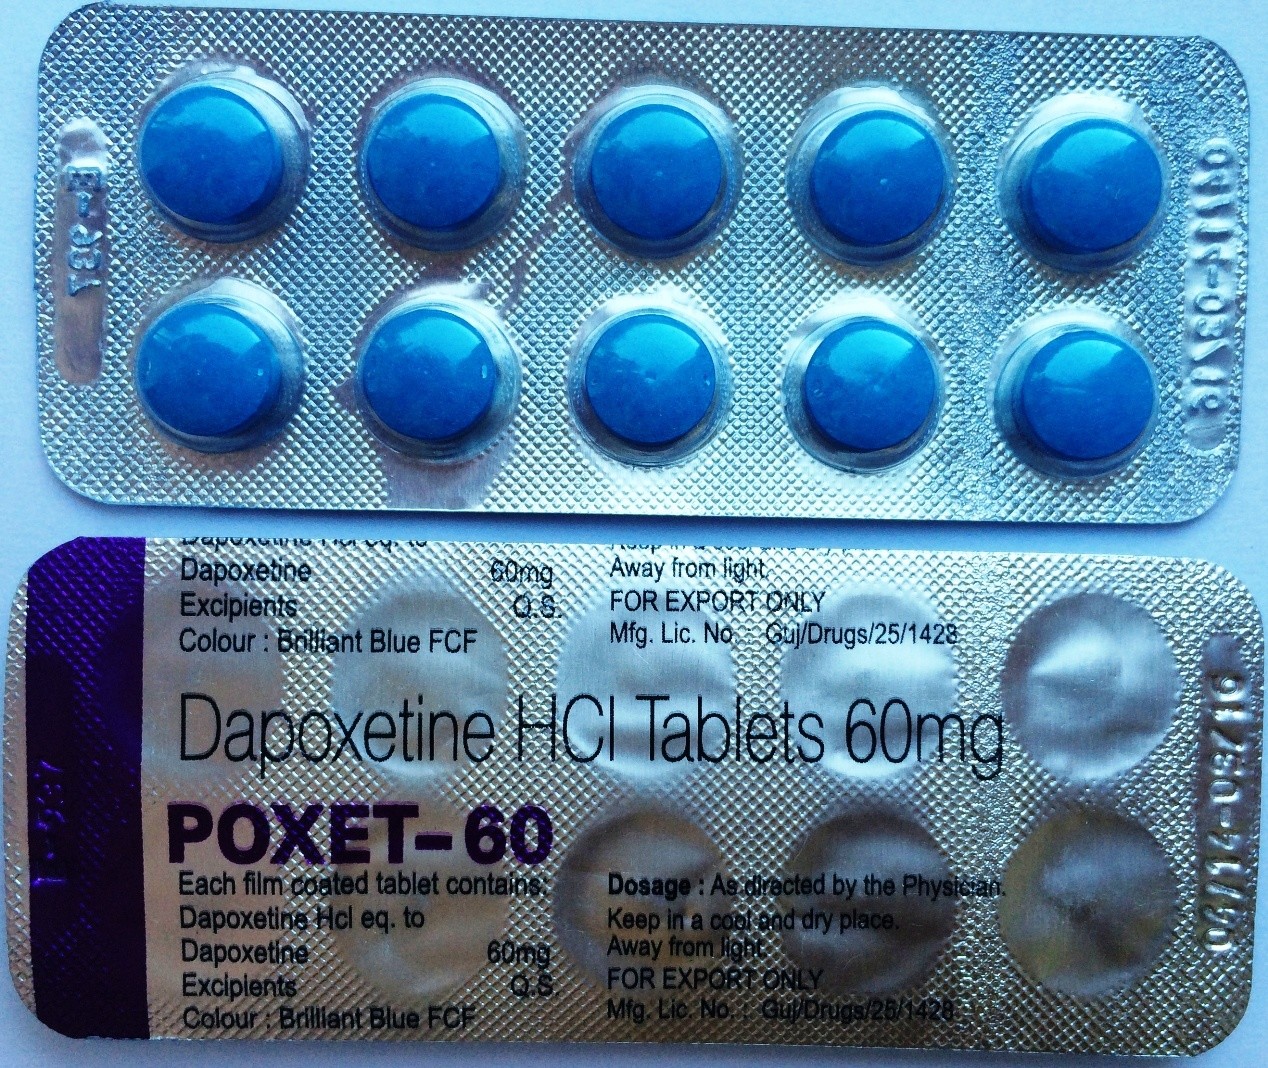 Продлить половой акт мужчине таблетки. Poxet-60 (дапоксетин) - 60mg. Дапоксетин 60 мг. Таблетки для задержки Семяизвержения. Дапоксетин 10 мг.